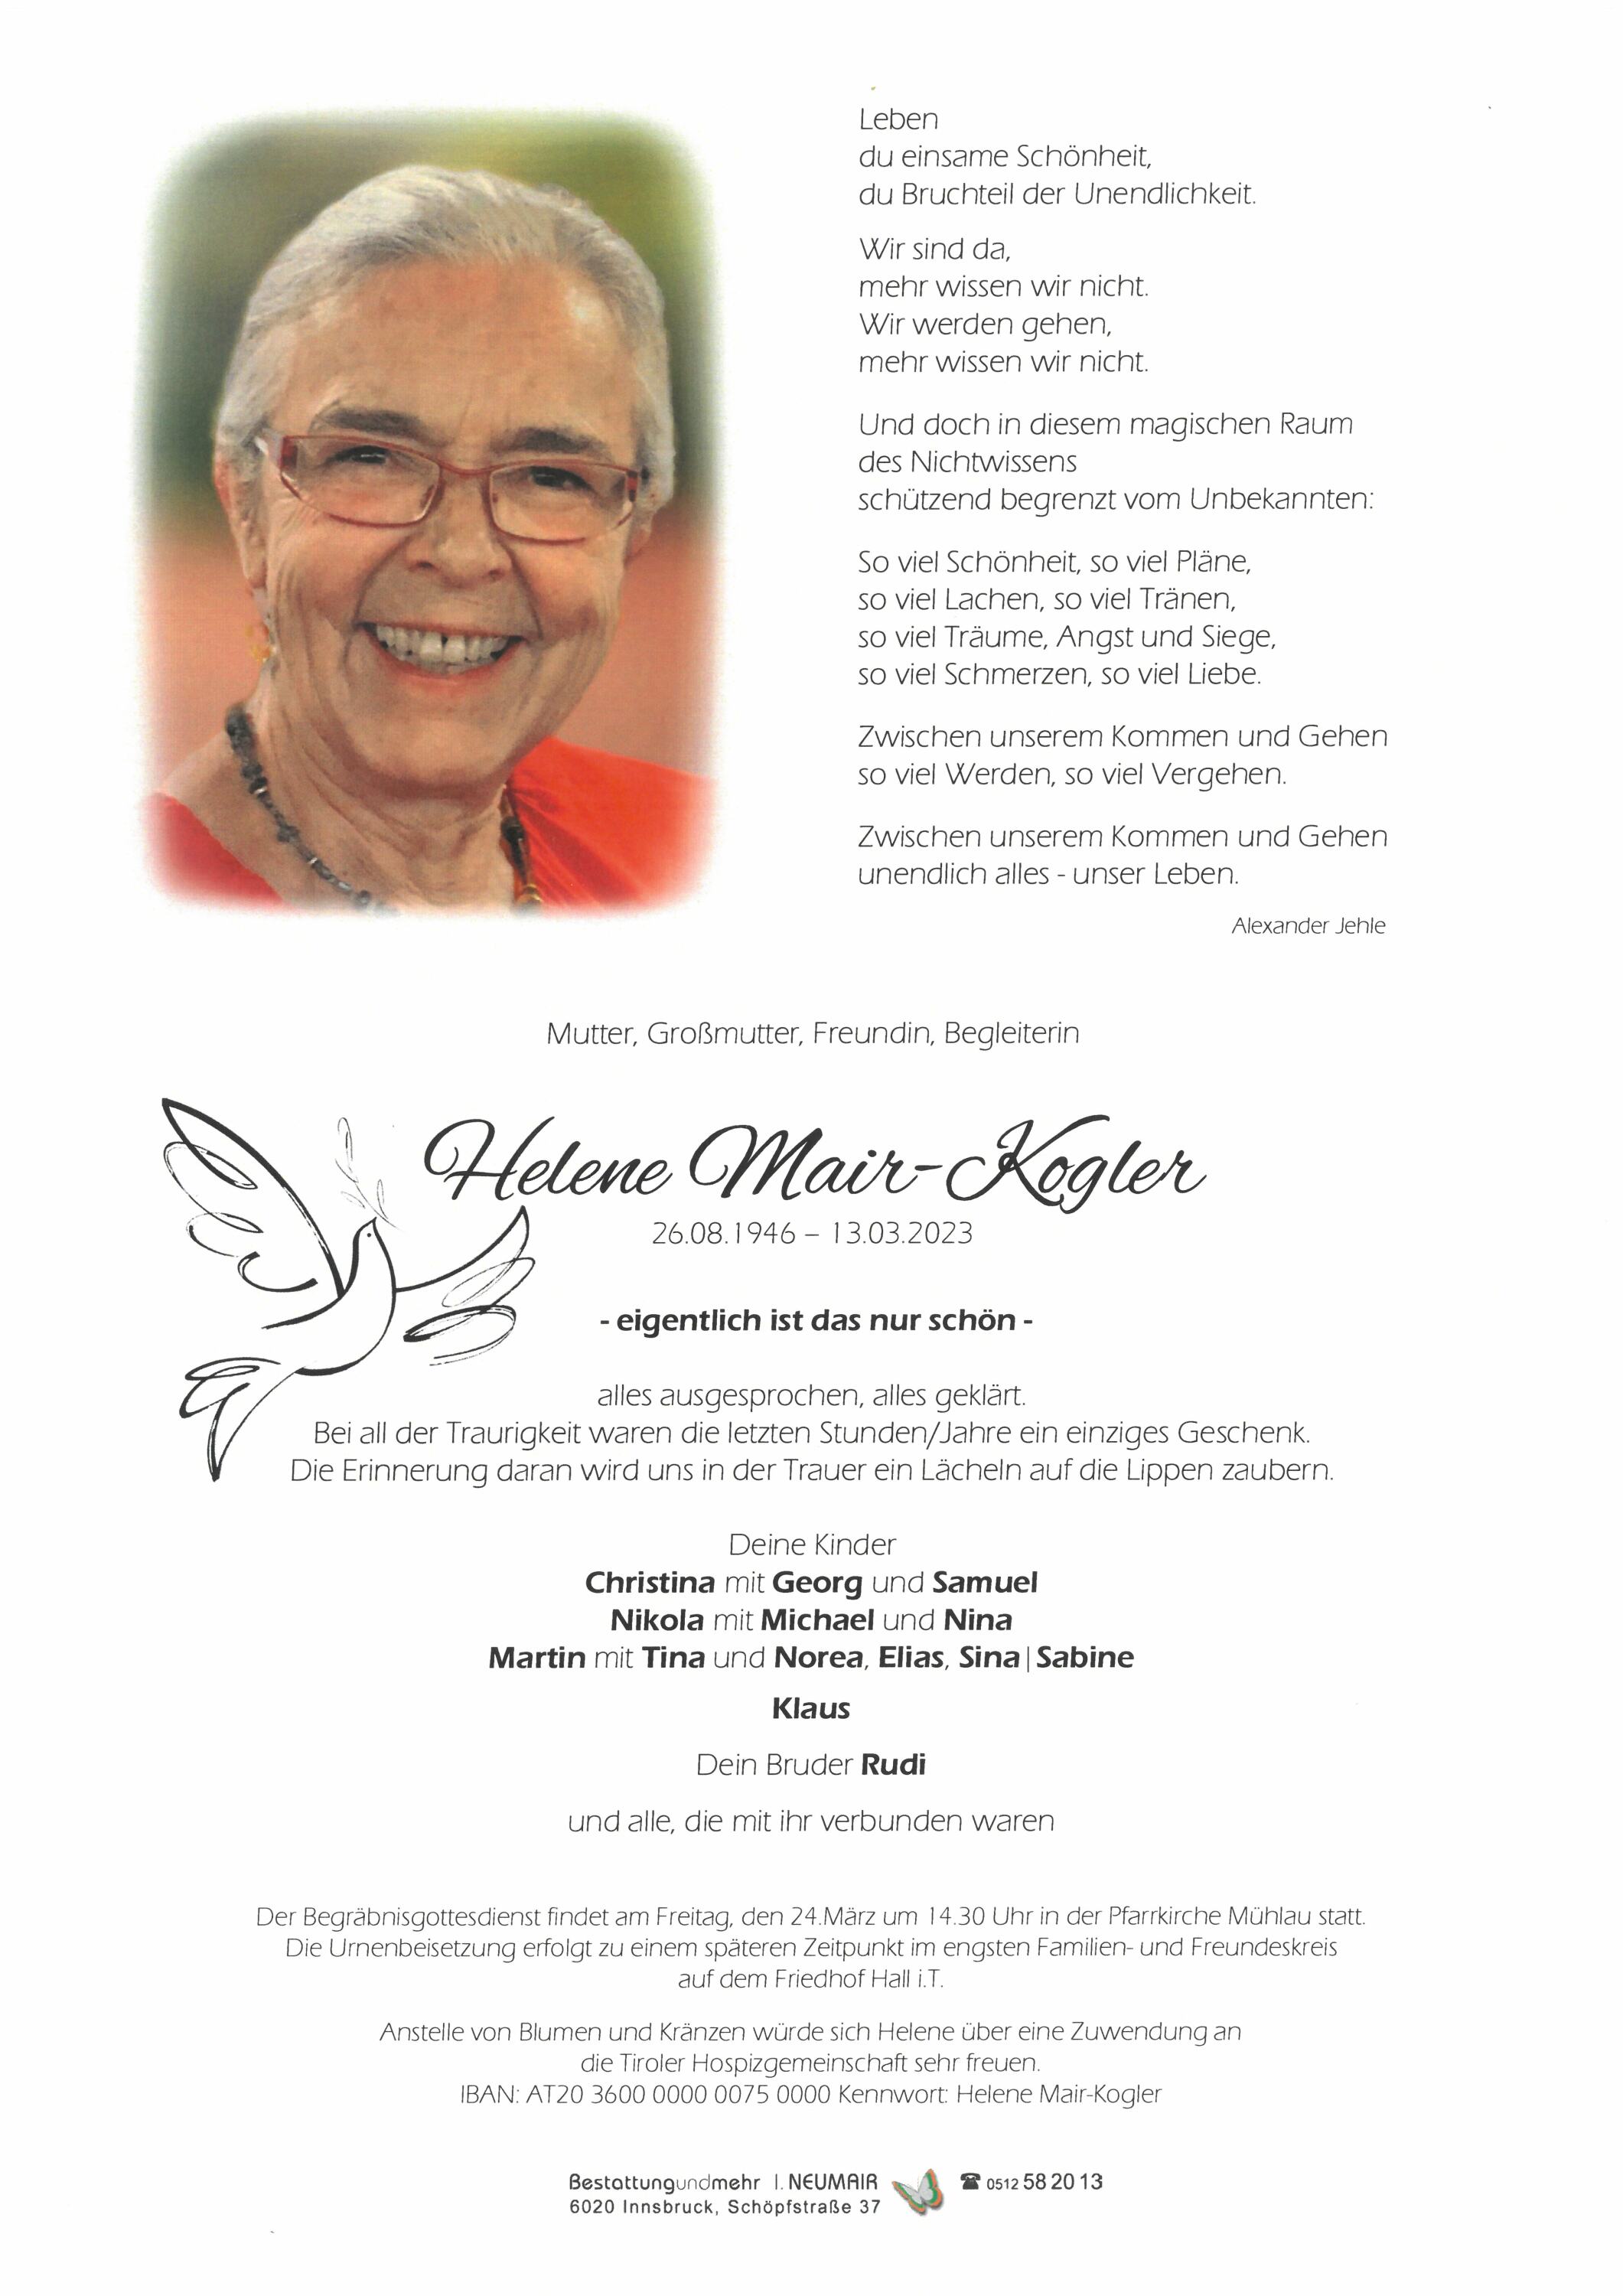 Helene Mair-Kogler